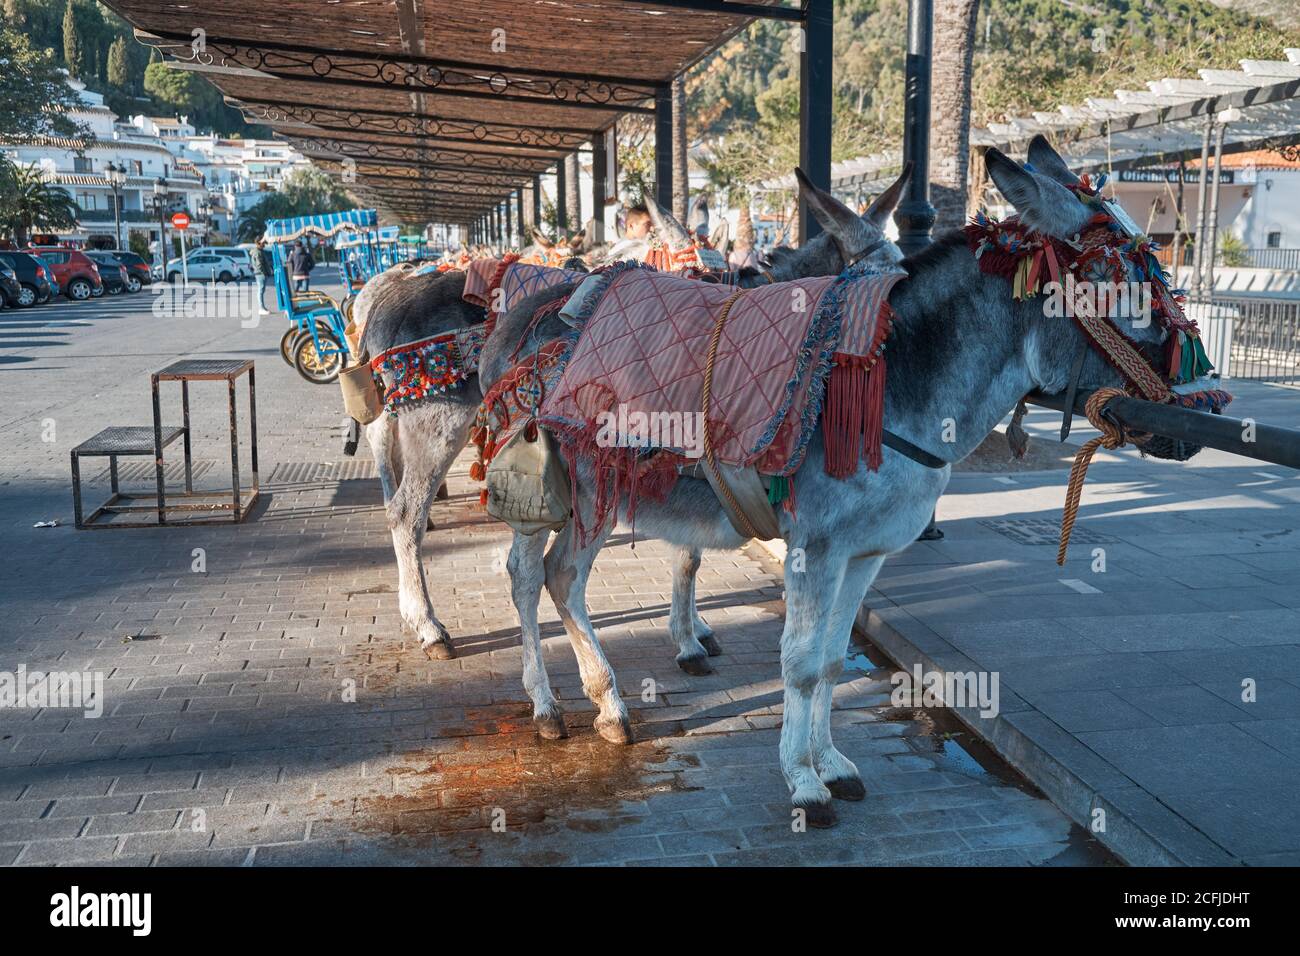 Donkeys - Burro Taxi. Mijas, Málaga province, Andalusia, Spain. Stock Photo